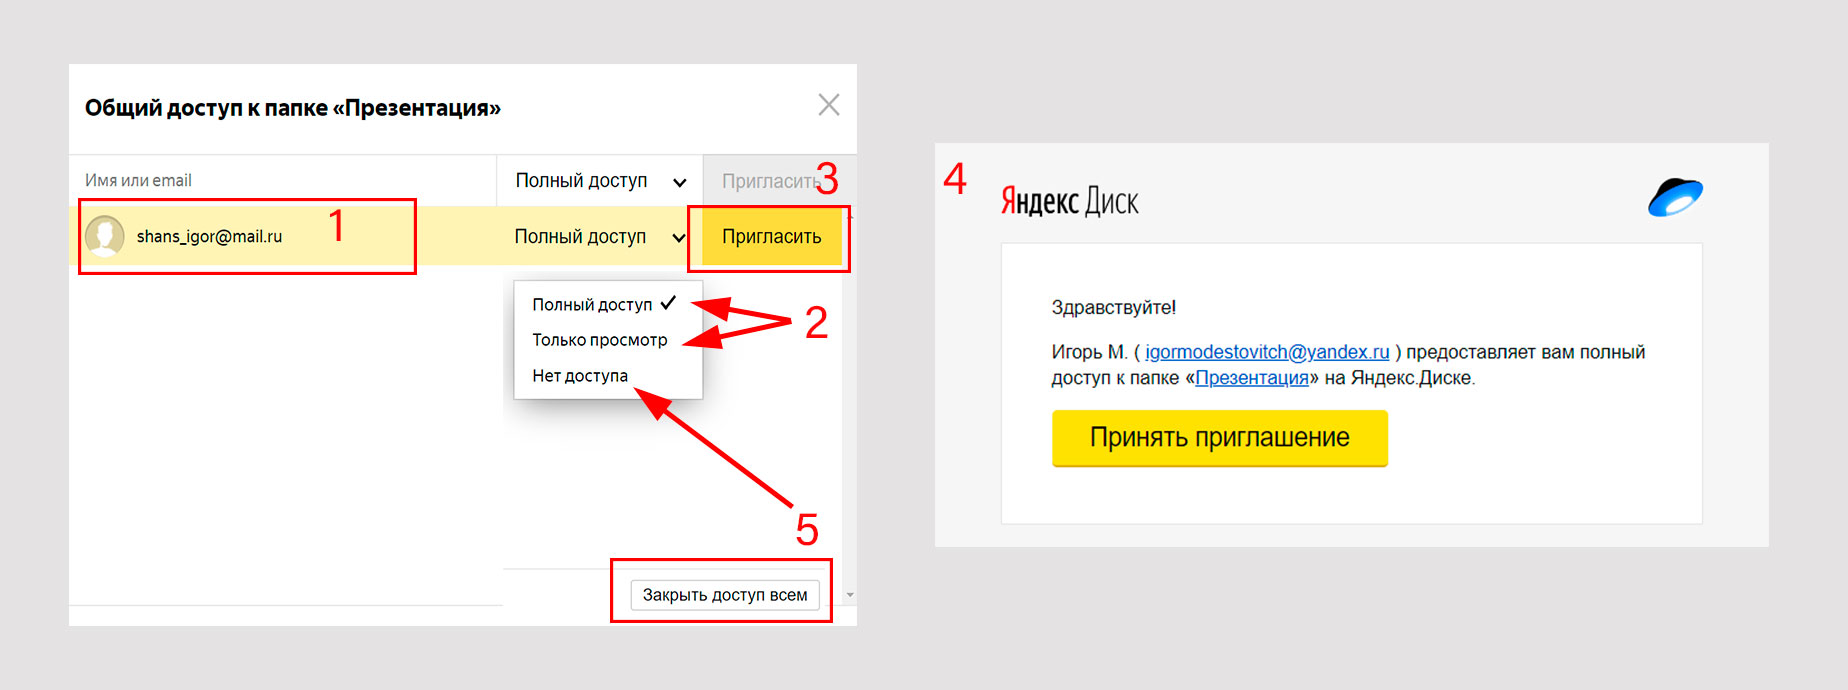 Как открыть доступ к паке облачного сервиса Яндекс.